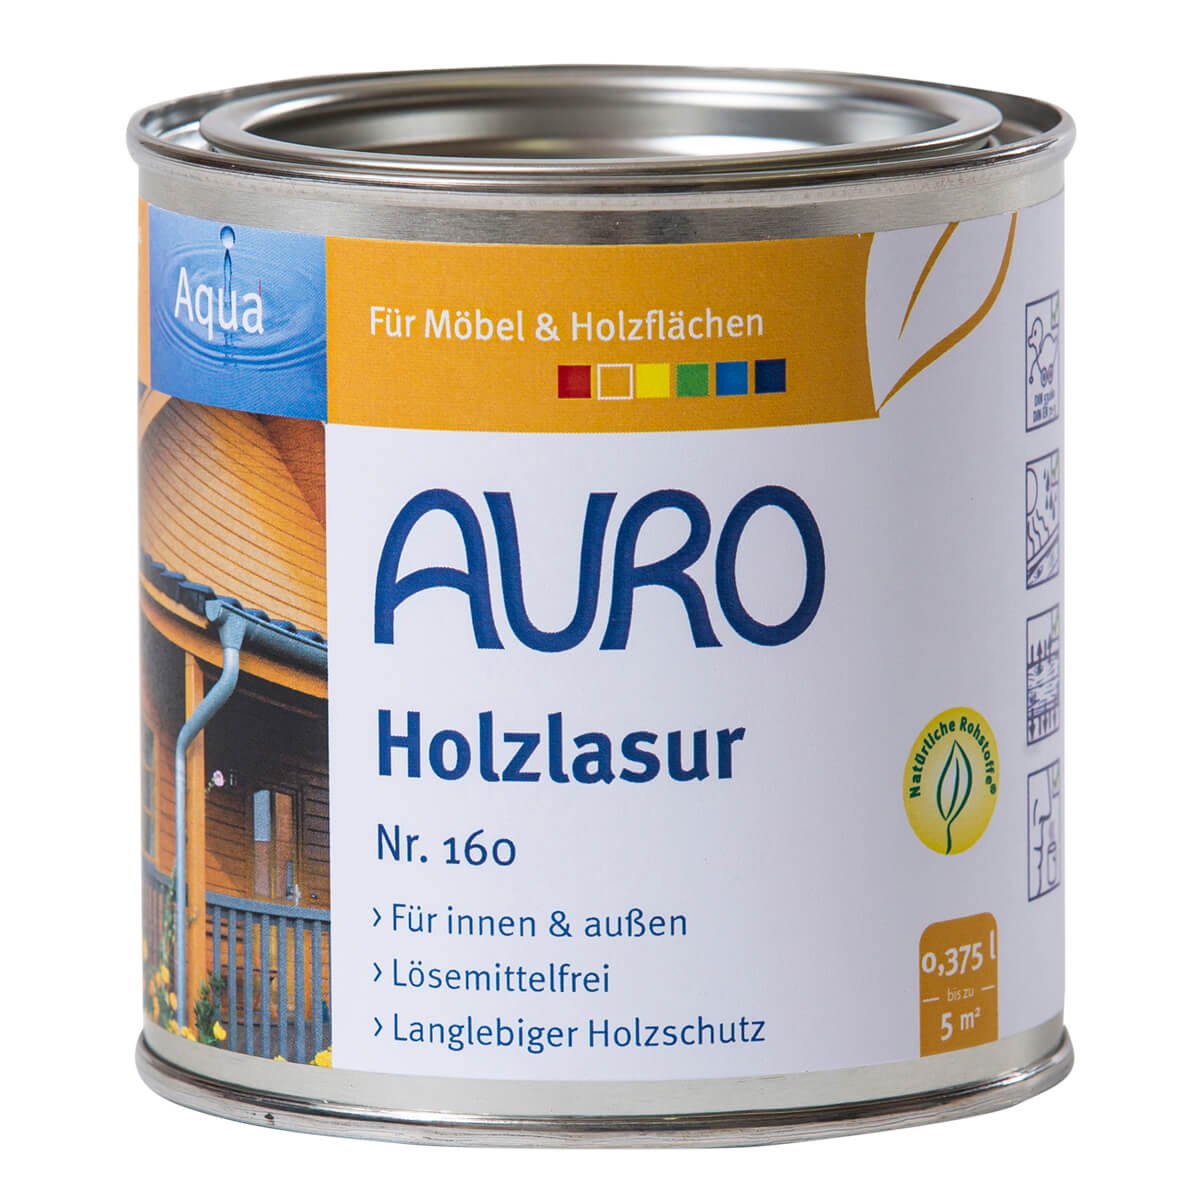 AURO Holzlasur Aqua lösemittelfreie Lasur Naturfarbe